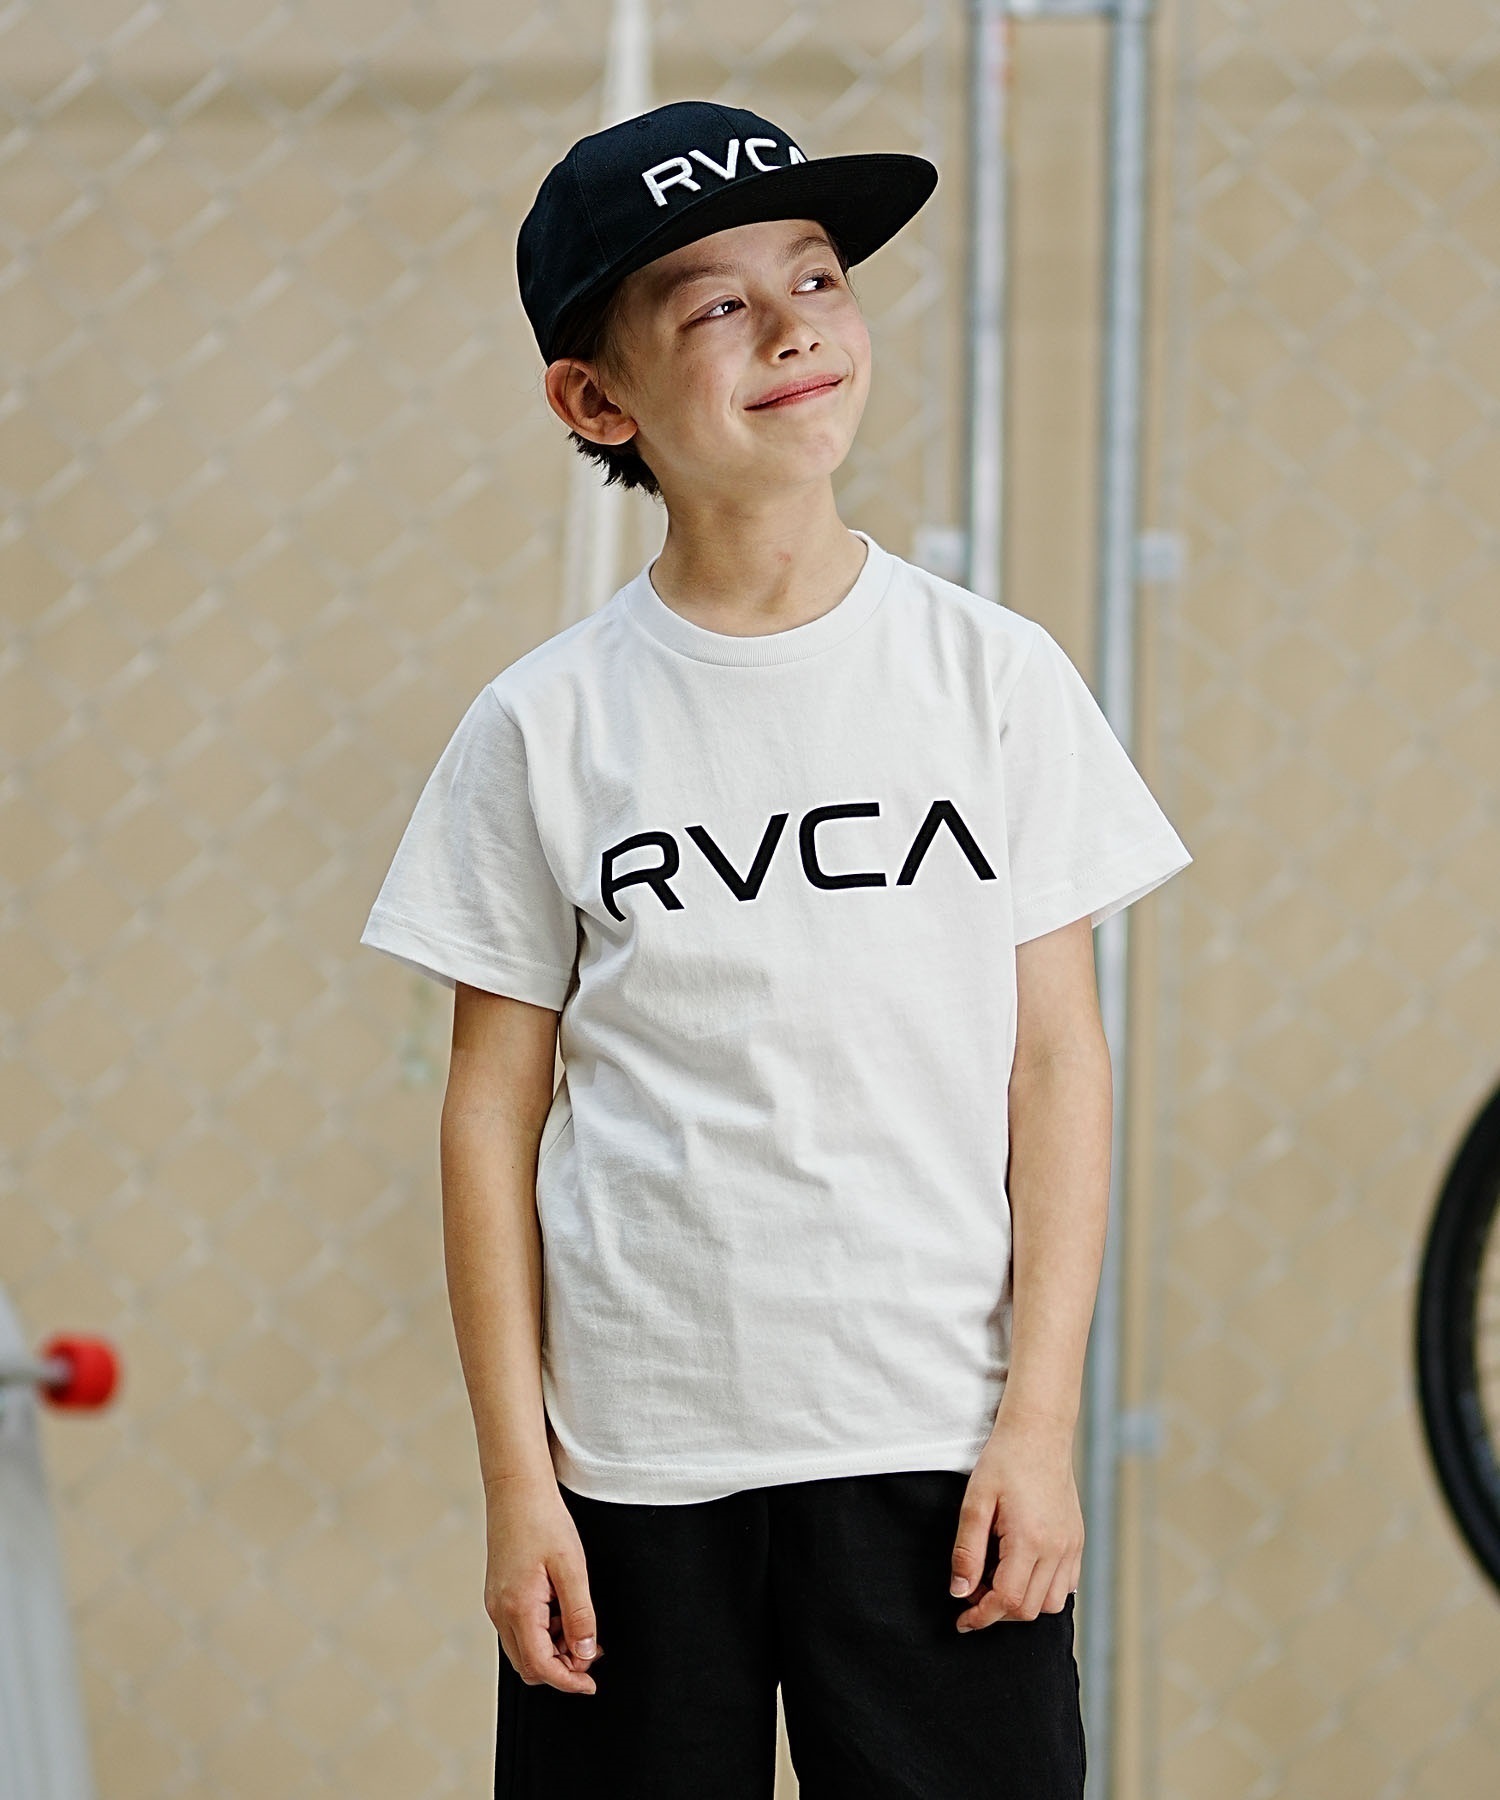 【クーポン対象】RVCA ルーカ キッズ 半袖Tシャツ 定番ロゴデザイン 親子コーデ BE045-226(WHT-130cm)